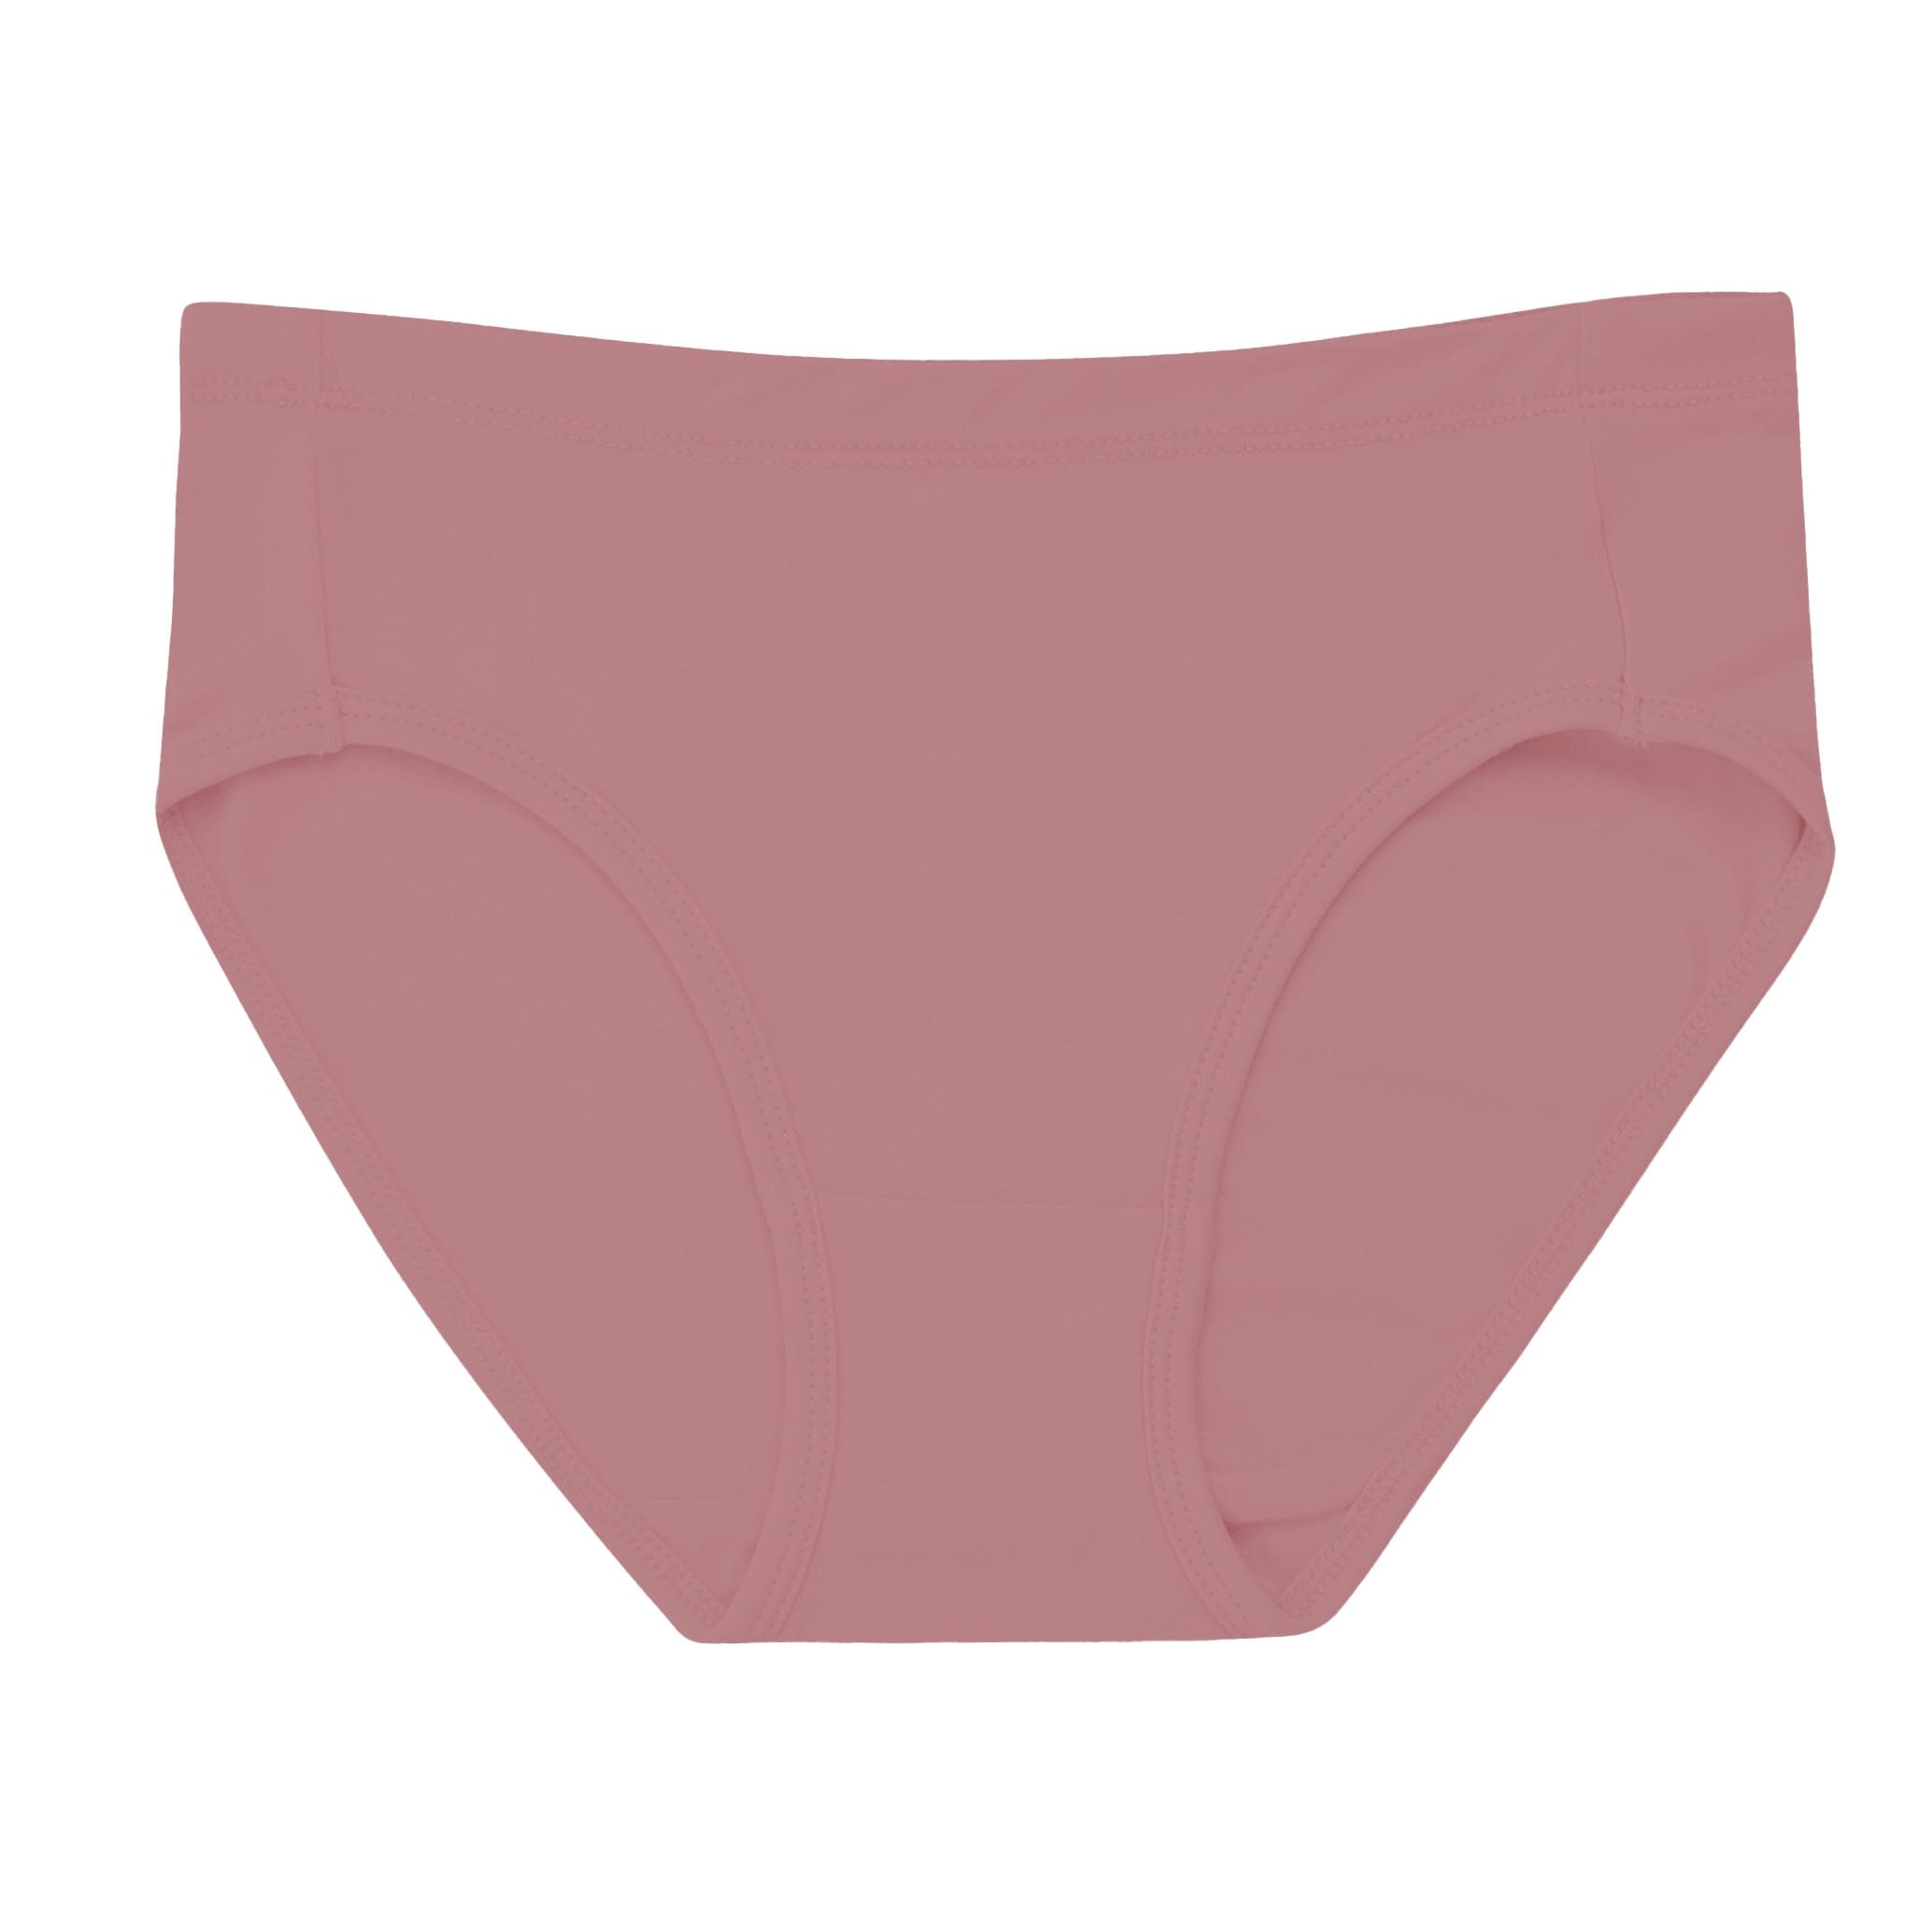 Kyte Baby Women's Underwear Women’s Underwear in Dusty Rose